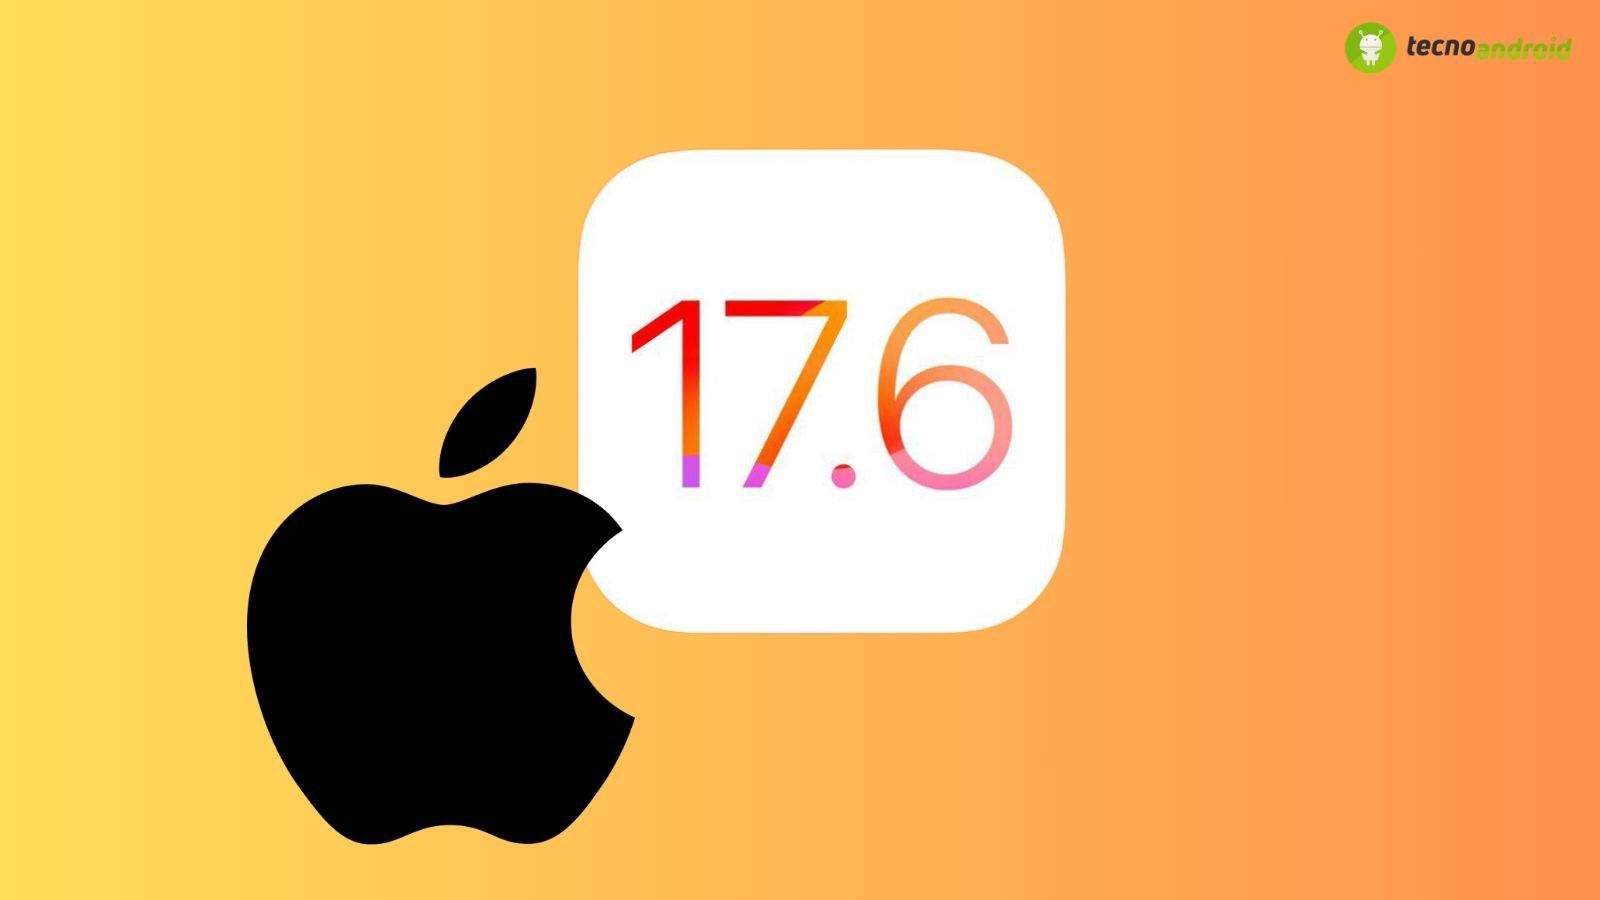 Apple potrebbe presto rilasciare iOS 17.6: cosa cambia?